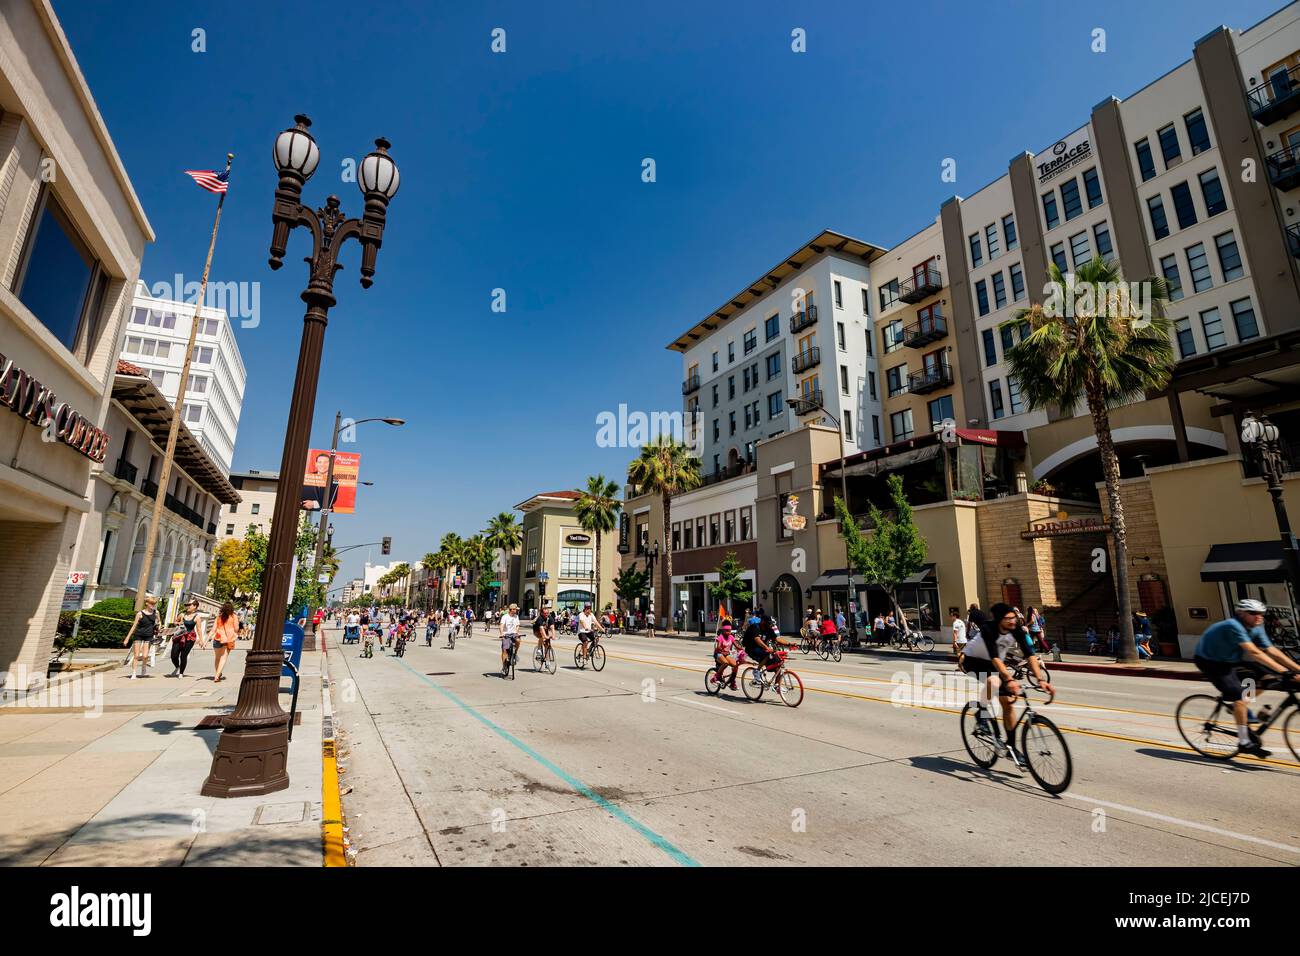 Los Angeles, MAI 31 2015 - Sonnenansicht des autofreien Tages - CicLAvia Veranstaltung in Pasadena Stockfoto